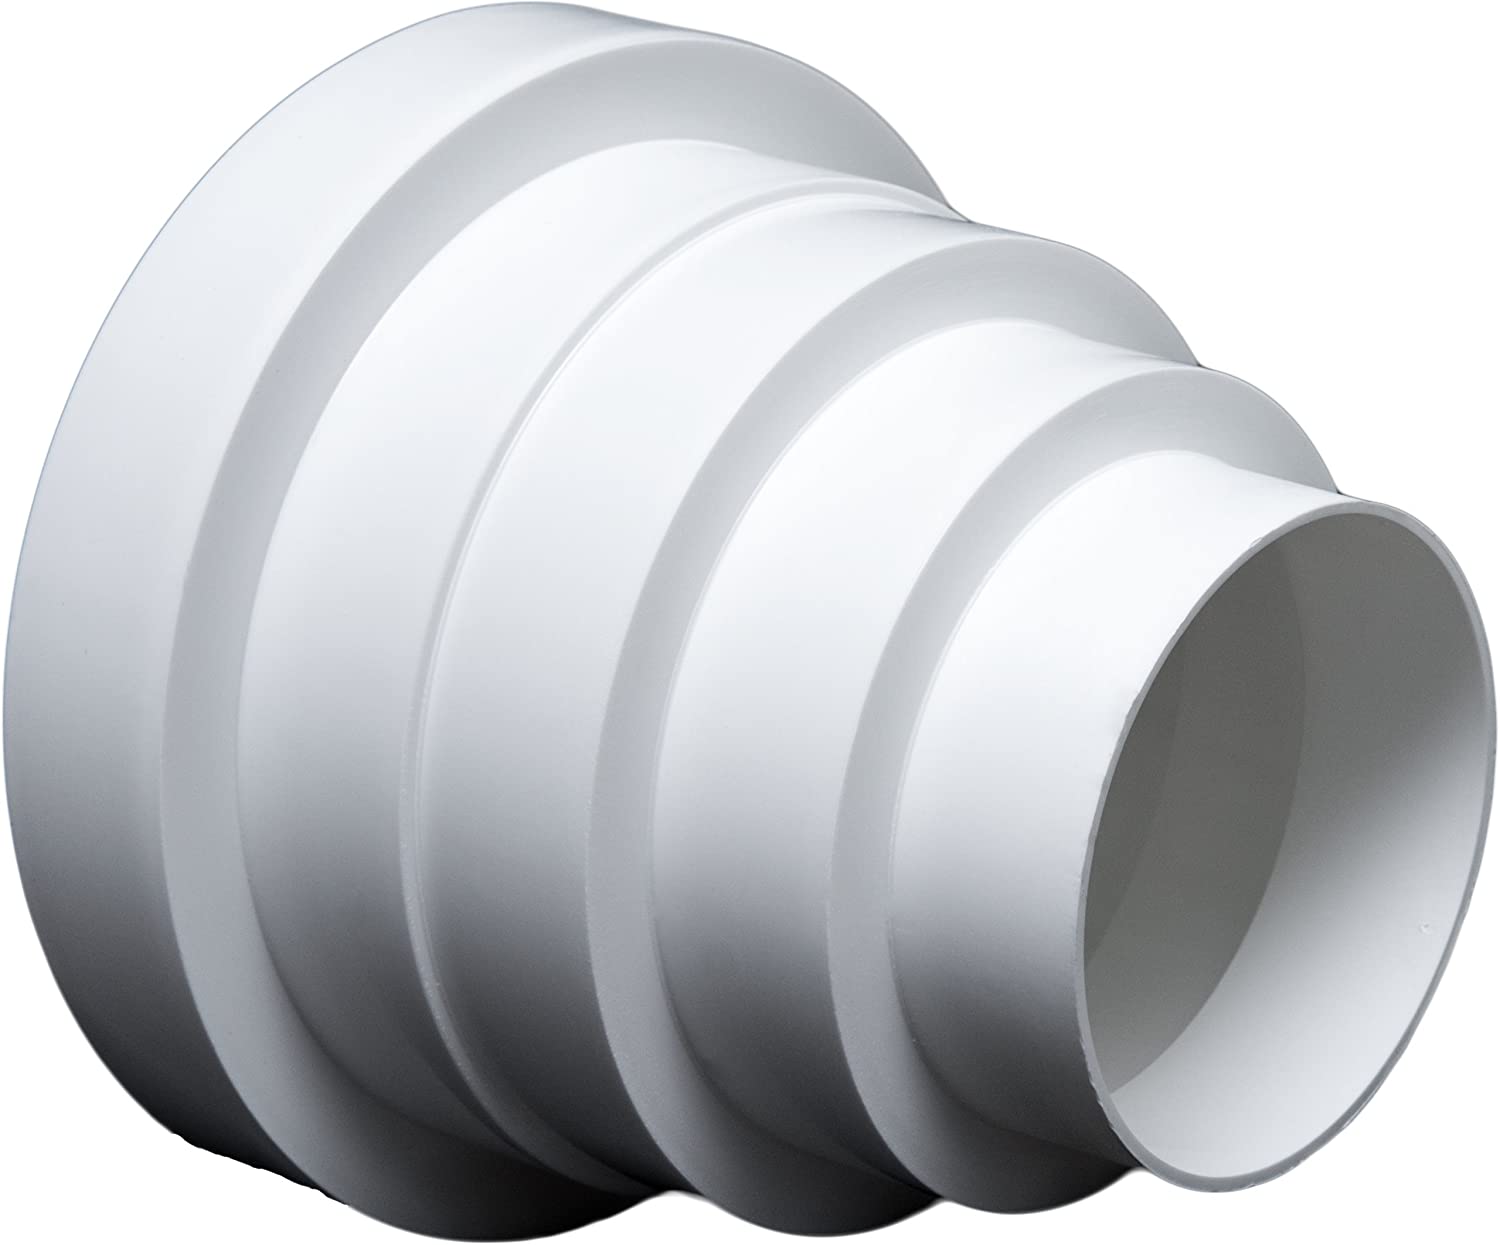 Riduttore universale per sistemi di ventilazione, diametro 80-150 mm.Riduttore con tubo di diametro 80, 100, 120, 125 e 150 mm.Tubo per condotti di ventilazione.RDRC.